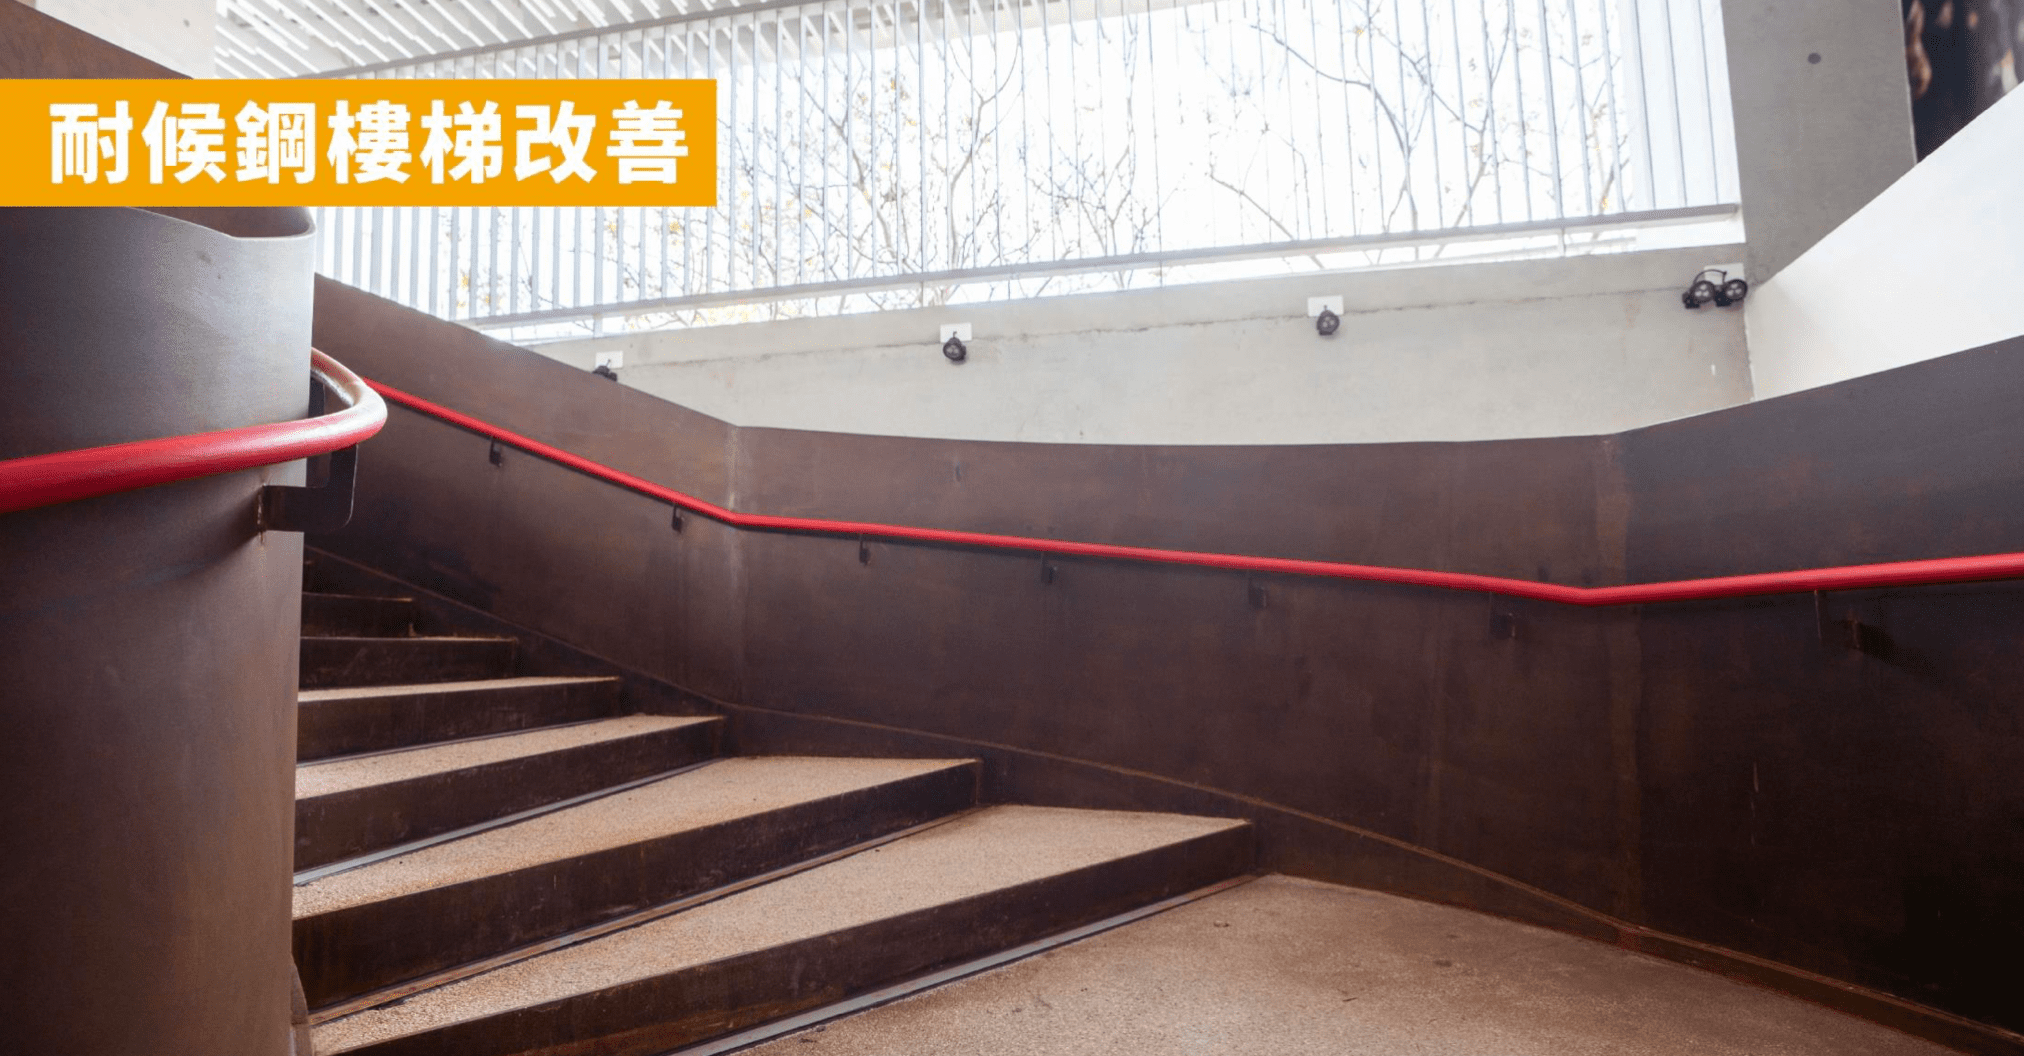 新竹棒球場 樓梯改善